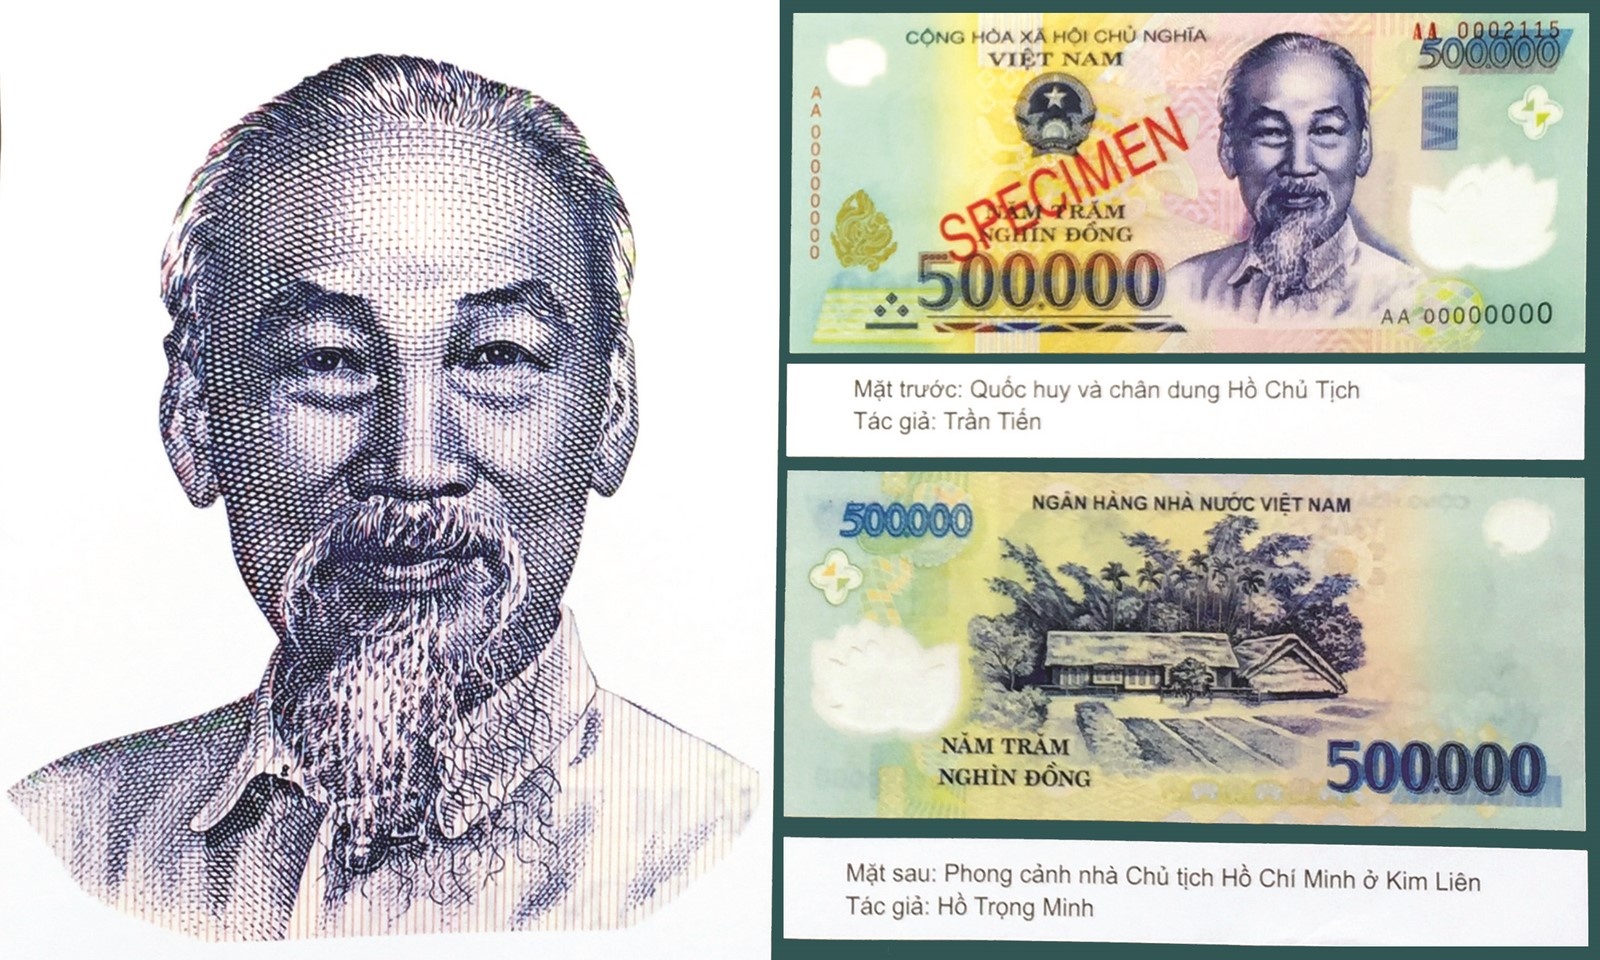 Với vai trò lãnh đạo và những đóng góp không thể thiếu cho sự phát triển của đất nước, Chủ tịch Hồ Chí Minh là một biểu tượng vô cùng quan trọng của Việt Nam. Hãy cùng ngắm nhìn những hình ảnh độc đáo và ý nghĩa về người vĩ đại này trên các đồng tiền xu và tờ tiền nào!